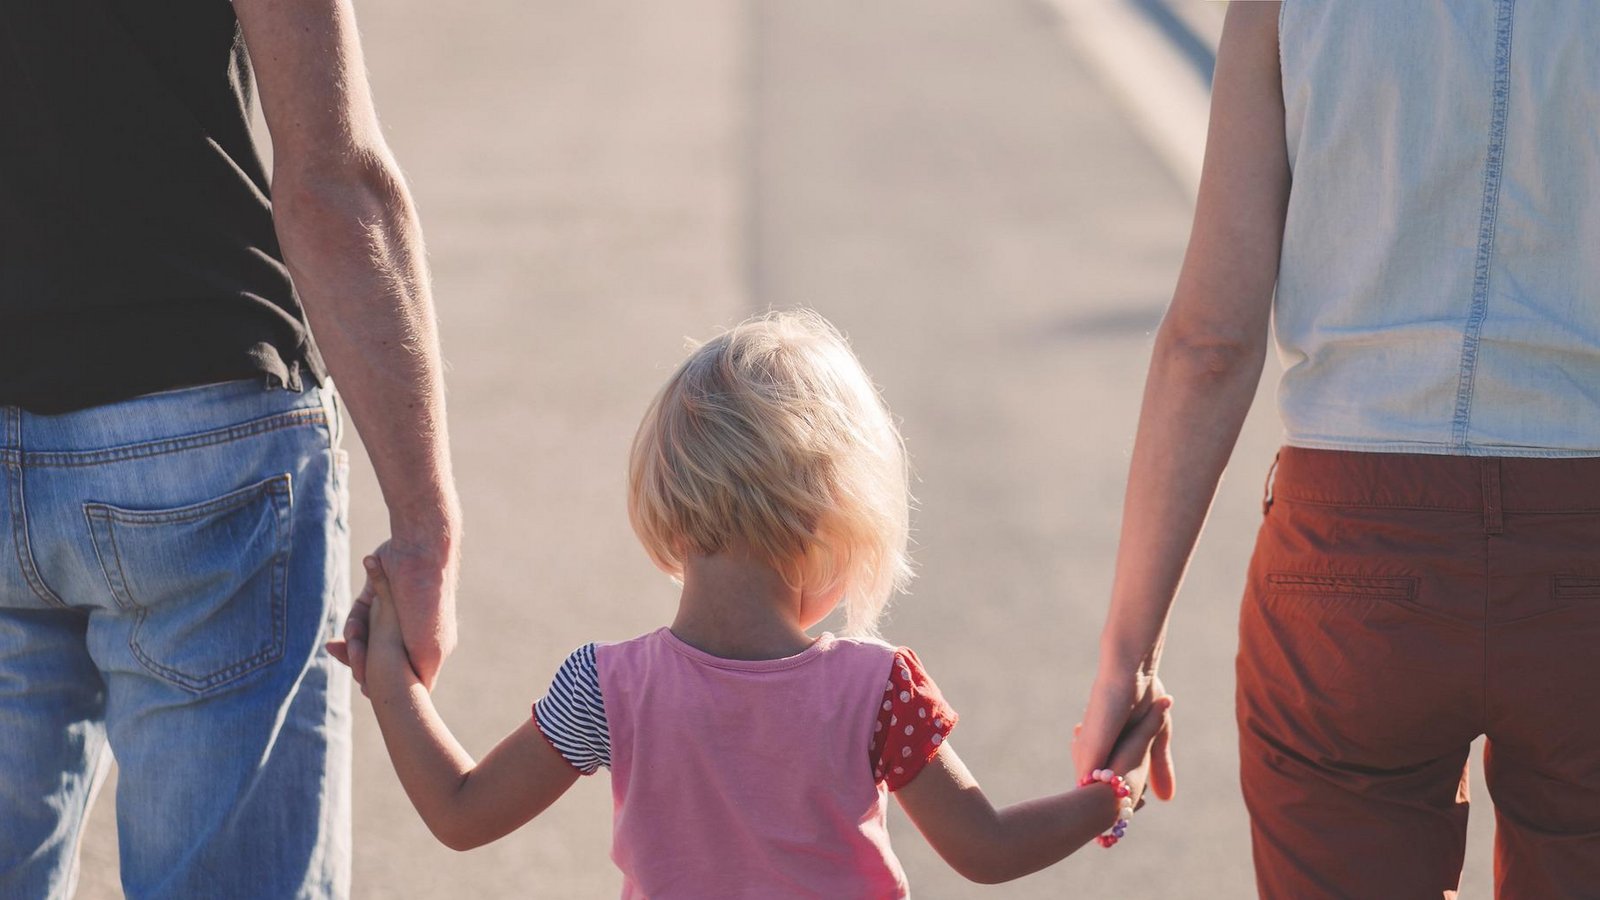 Eltern, die sich Unterstützung suchen, tun etwas Gutes für ihre Familie, findet Ingeborg Welz. Foto: Pixabay